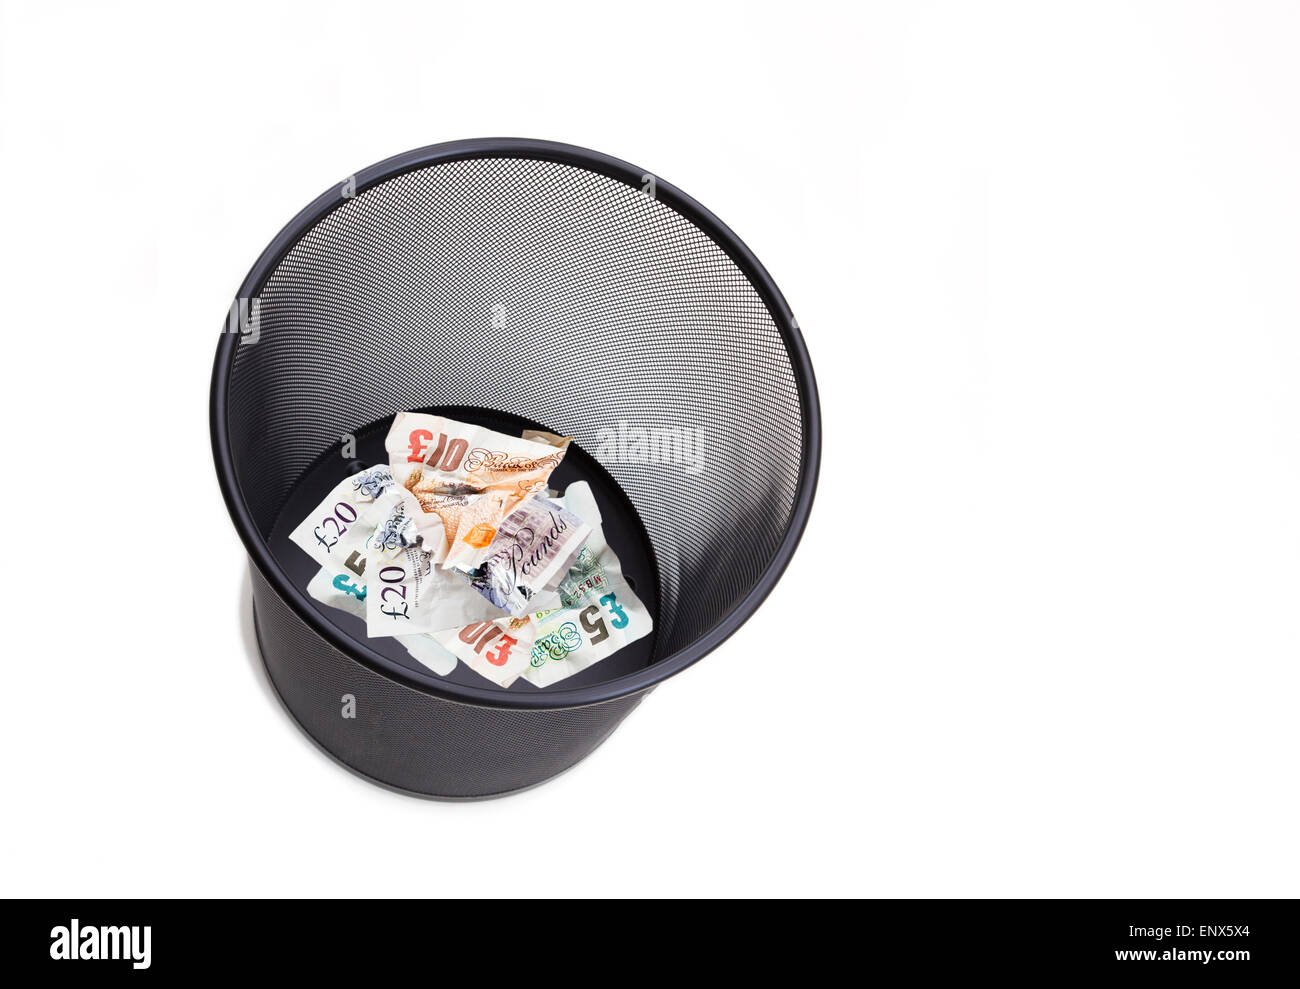 L'argent sterling pound note livres vissés et jetées dans un bac à papier blanc pour illustrer le concept de l'argent gaspillé. England UK Banque D'Images